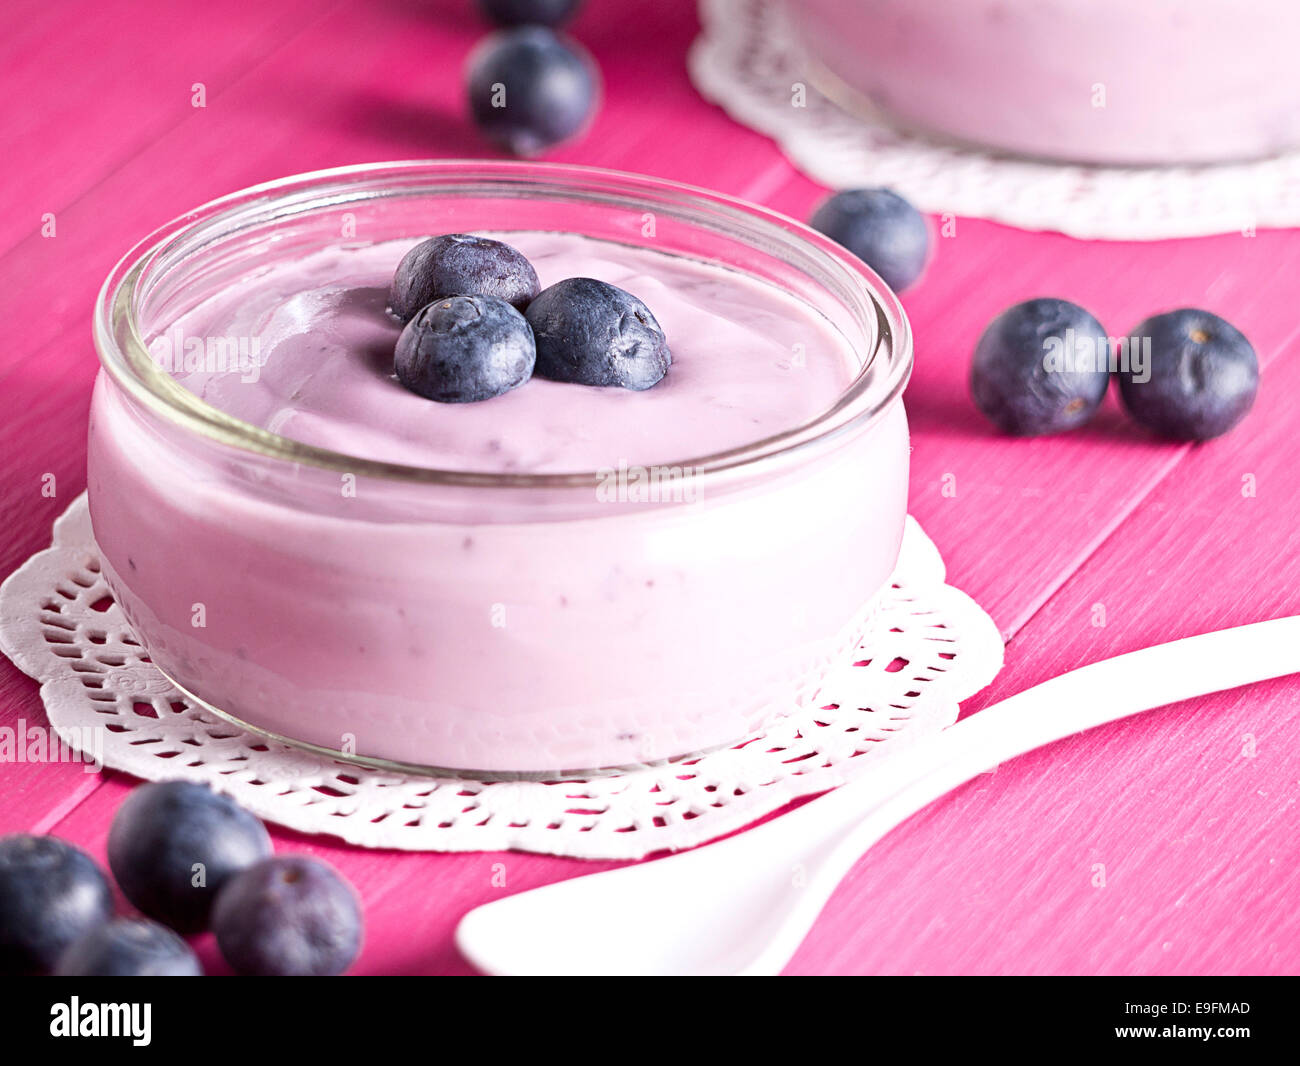 Joghurt mit Heidelbeeren Stockfotografie - Alamy